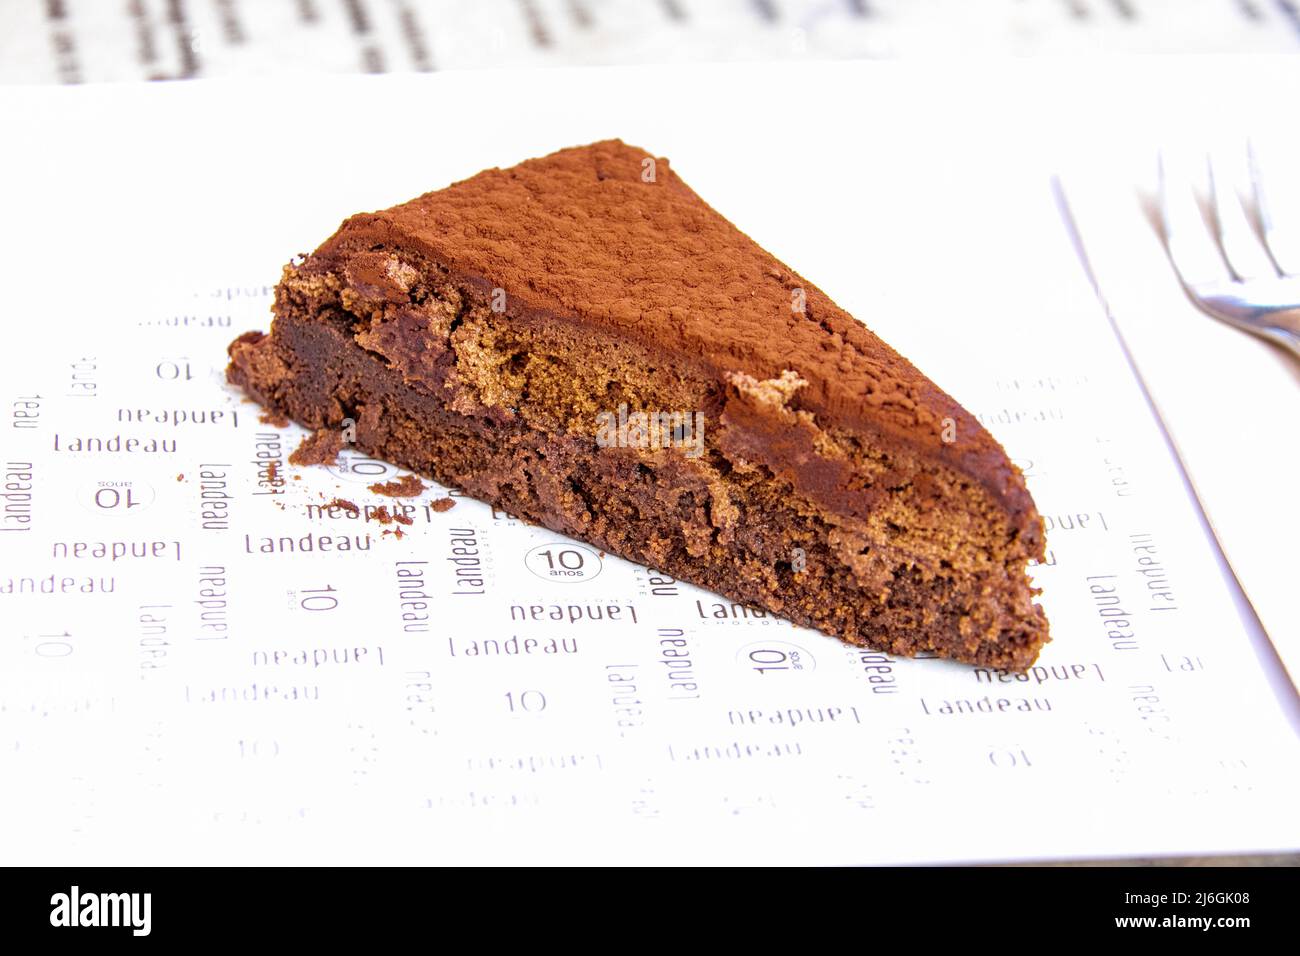 La torta al cioccolato migliore del mondo, il cioccolato Landeau, Lisbona, Portogallo Foto Stock